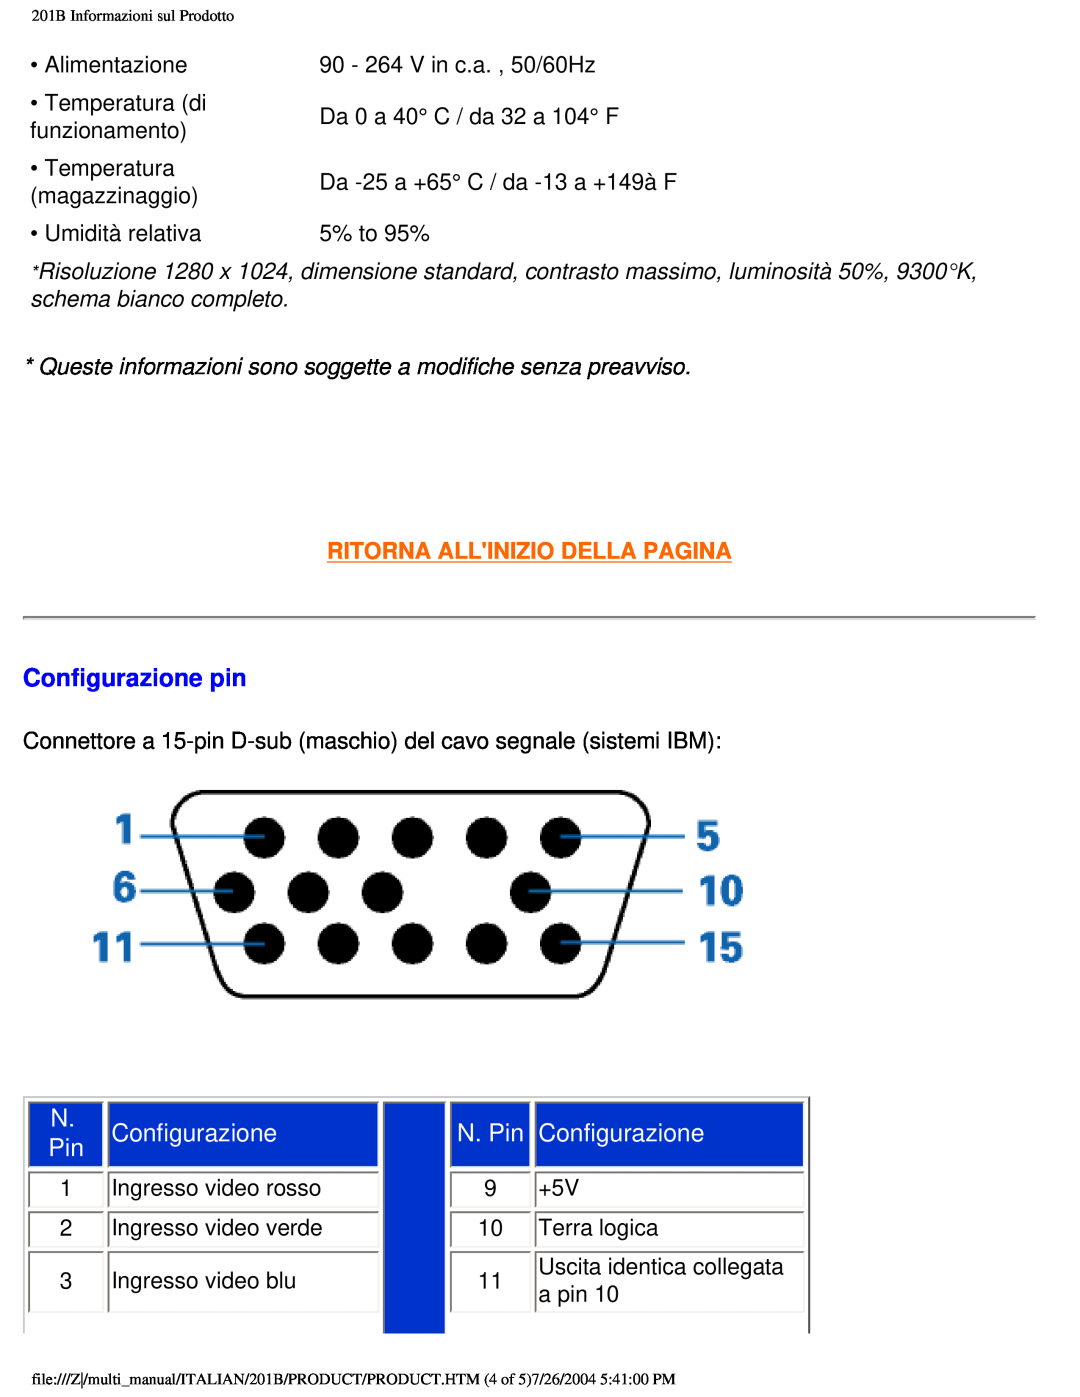 Philips 201B user manual Configurazione pin, N. Pin, Ritorna Allinizio Della Pagina 